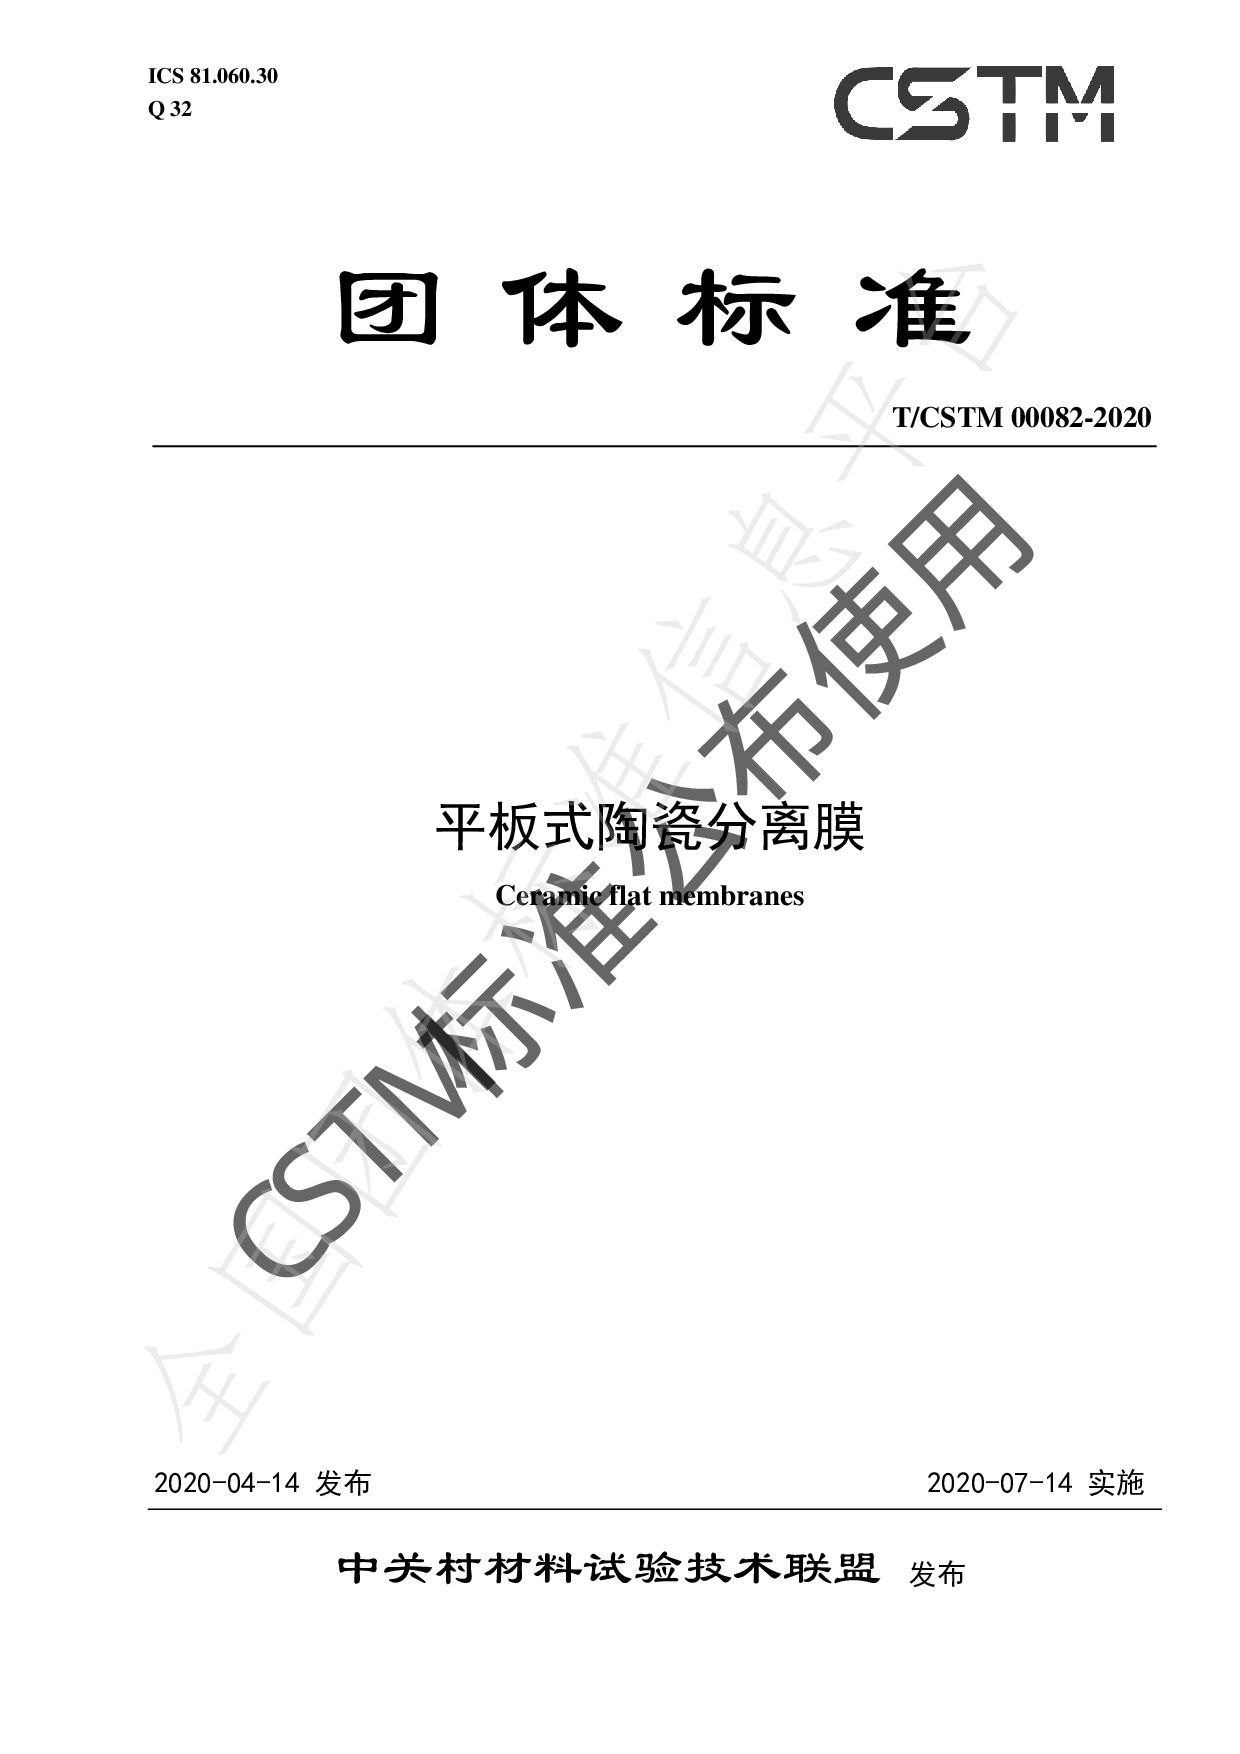 T/CSTM 00082-2020封面图